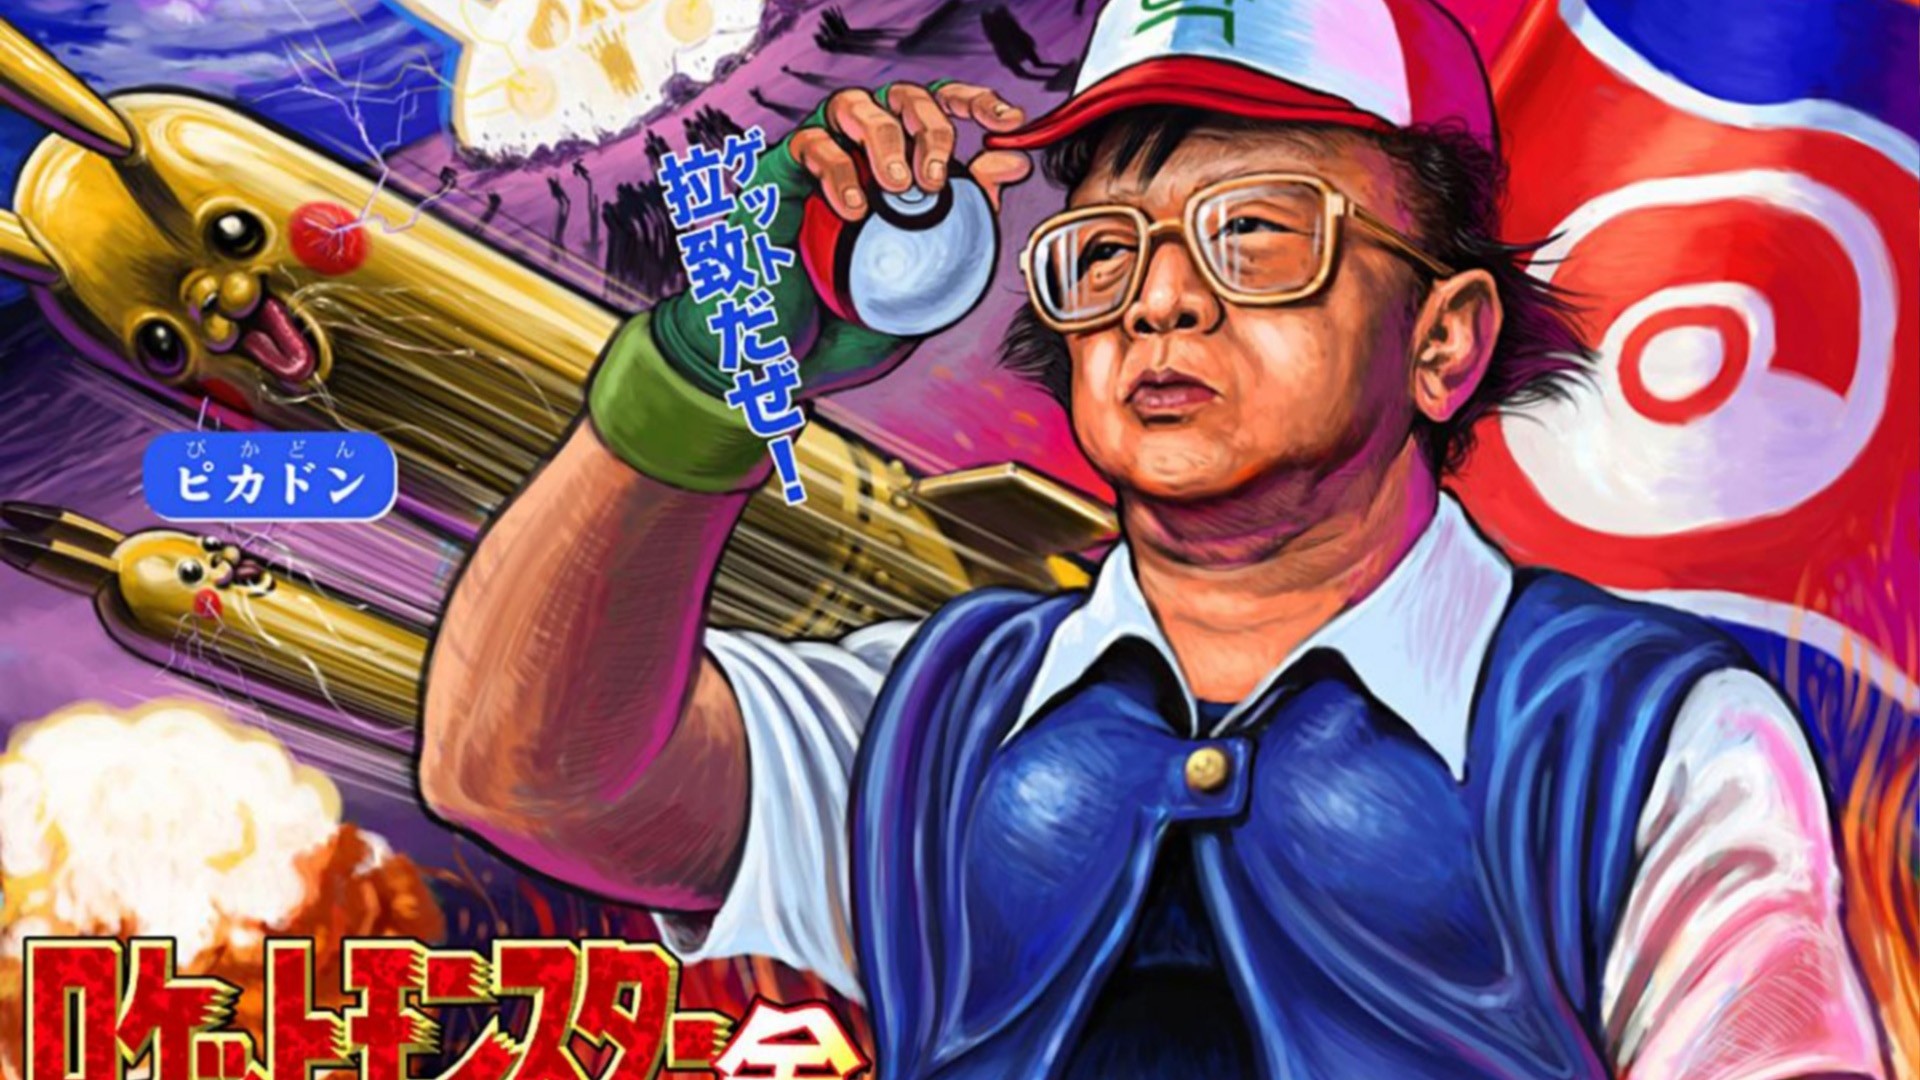 Kim Jong il, Pikachu, Poké Balls Wallpaper